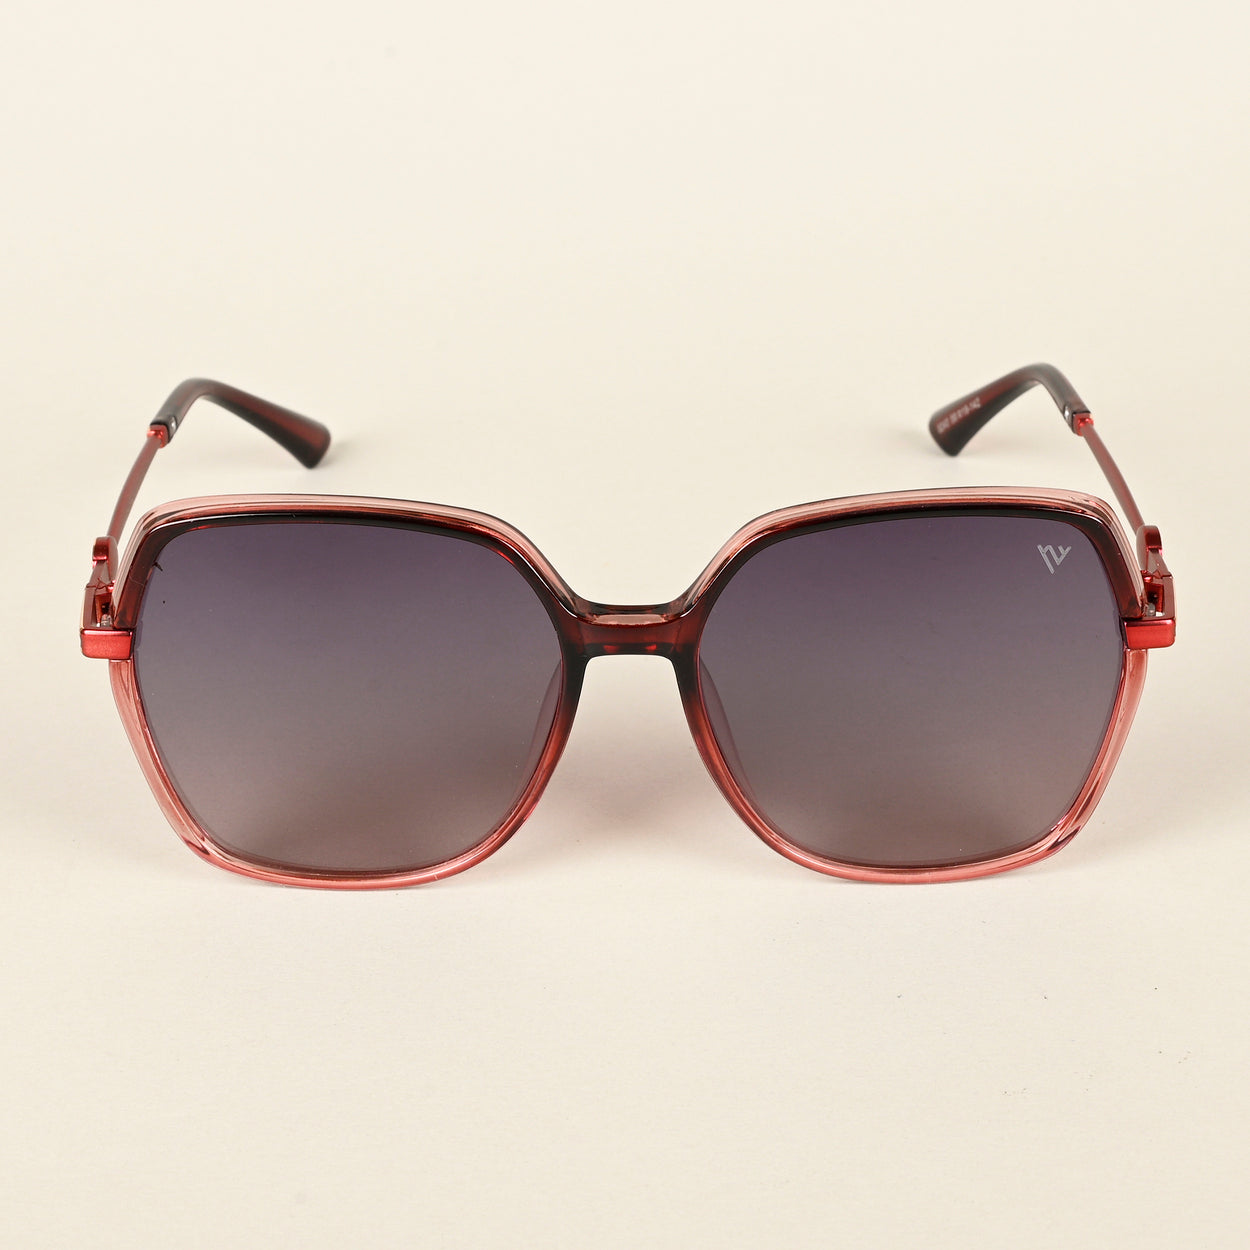 Voyage Grey Oversize Polarized Sunglasses for Women (8240PMG4345)